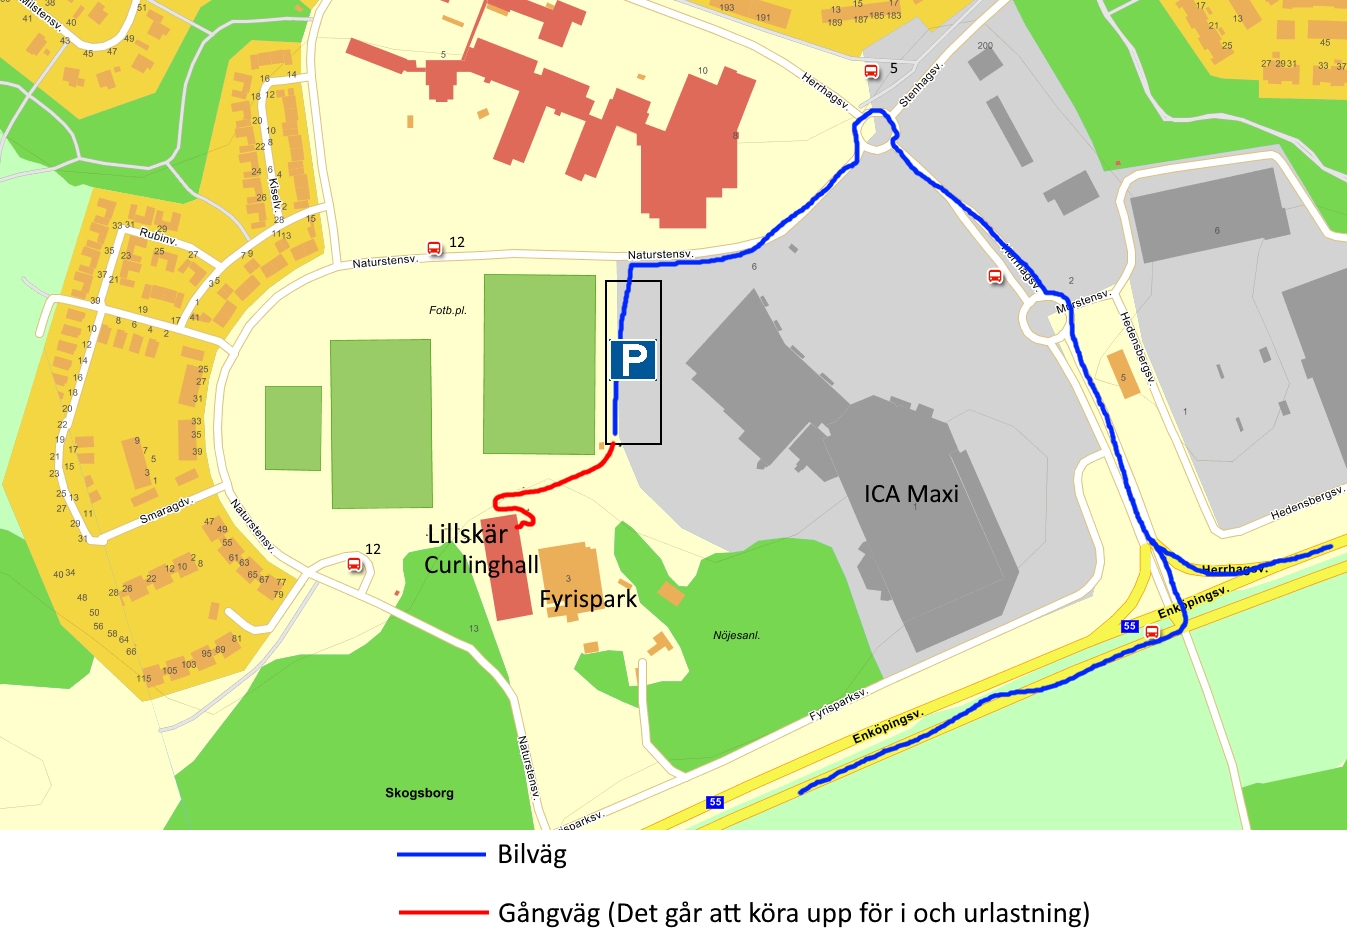 Karta till Hallen - Map to the curlingrink